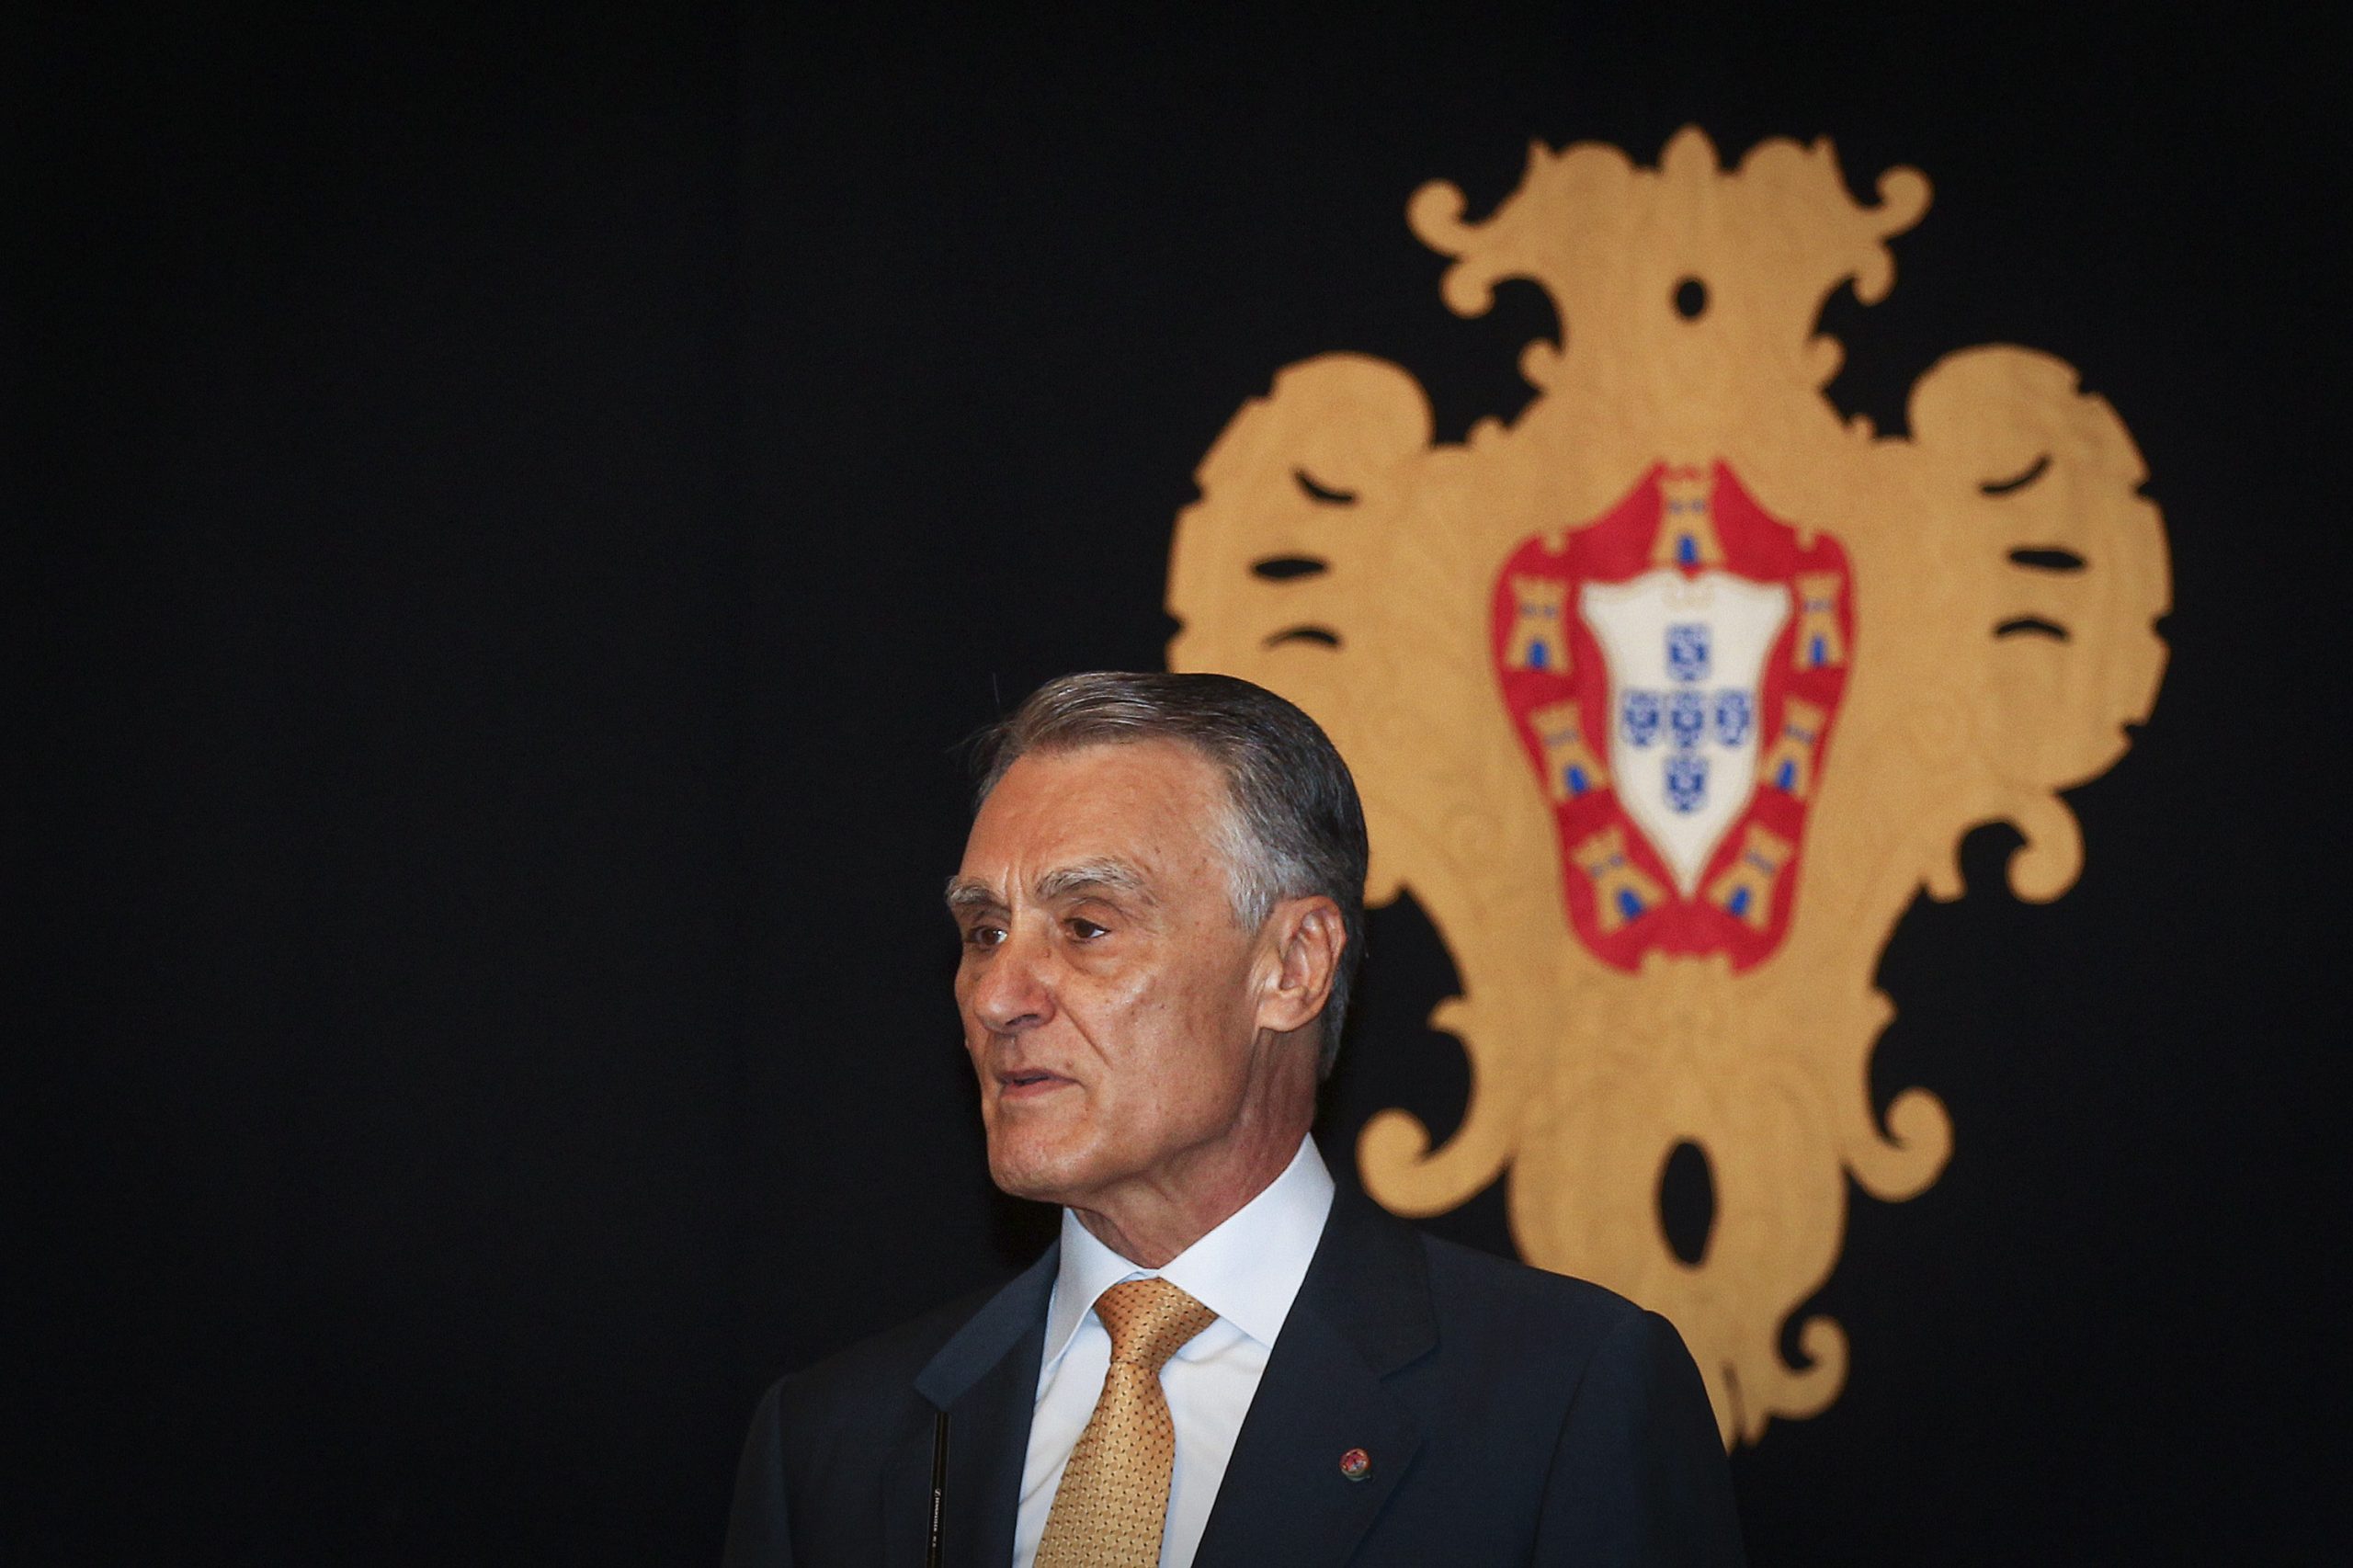 OE2015 já está em Belém para análise de Cavaco Silva